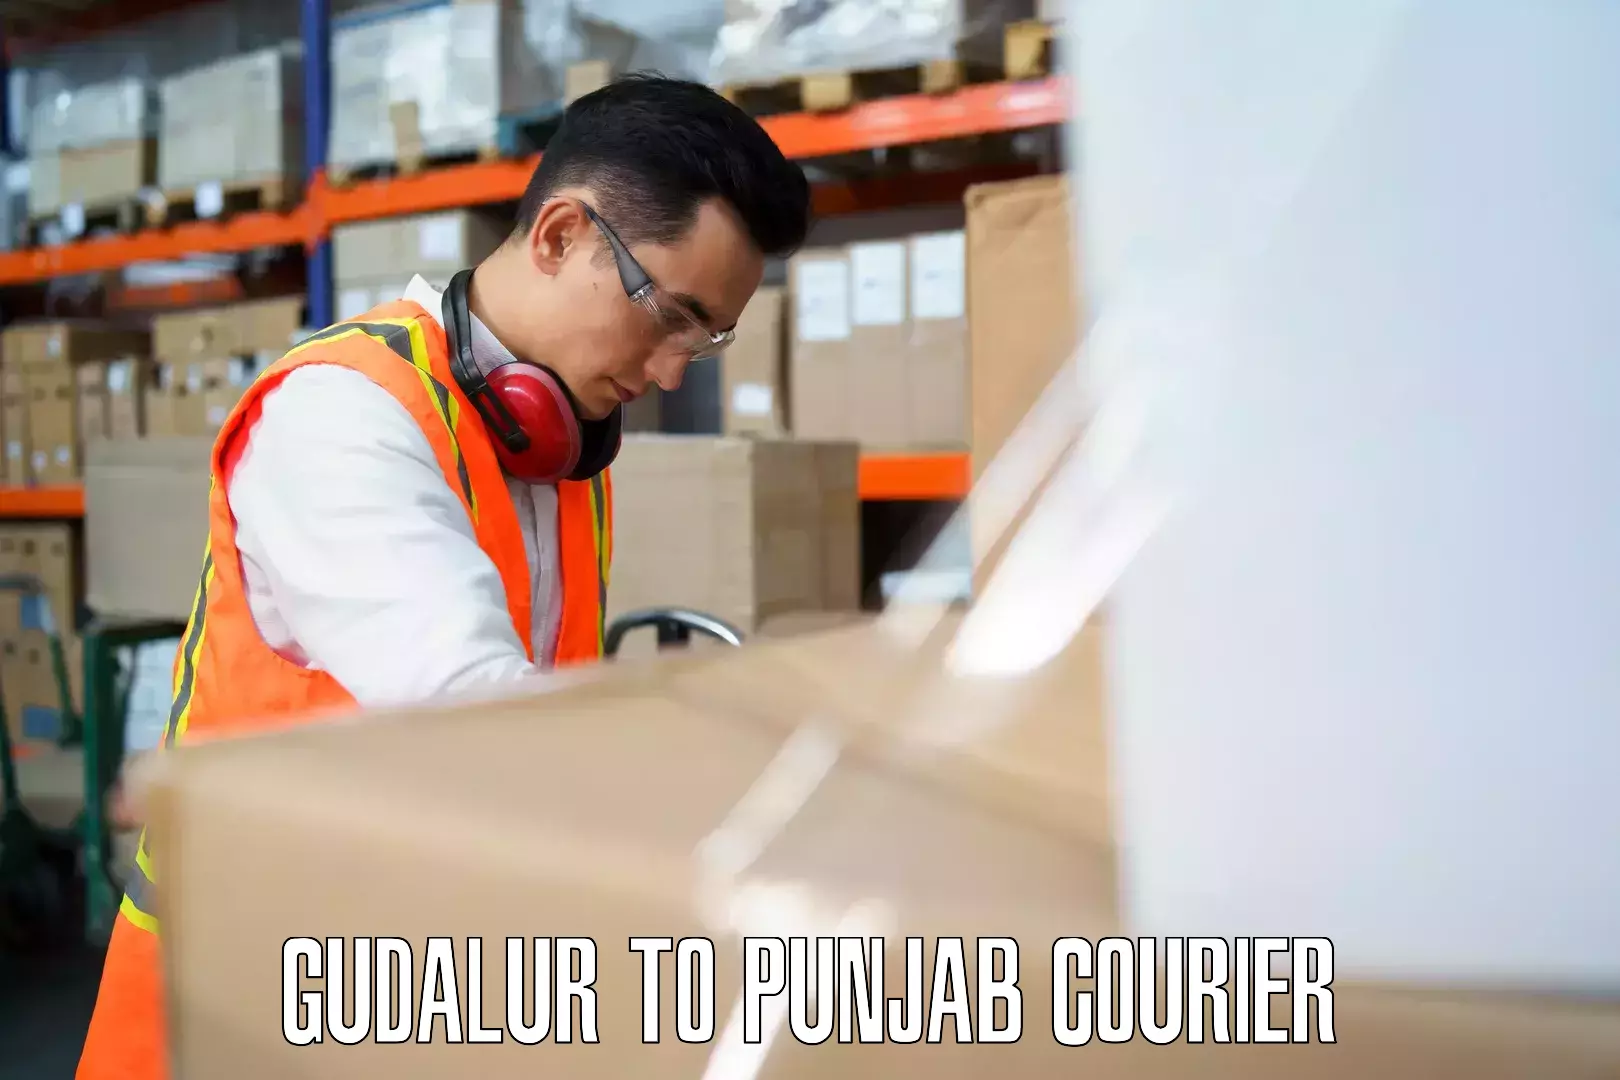 Emergency baggage service Gudalur to Punjab